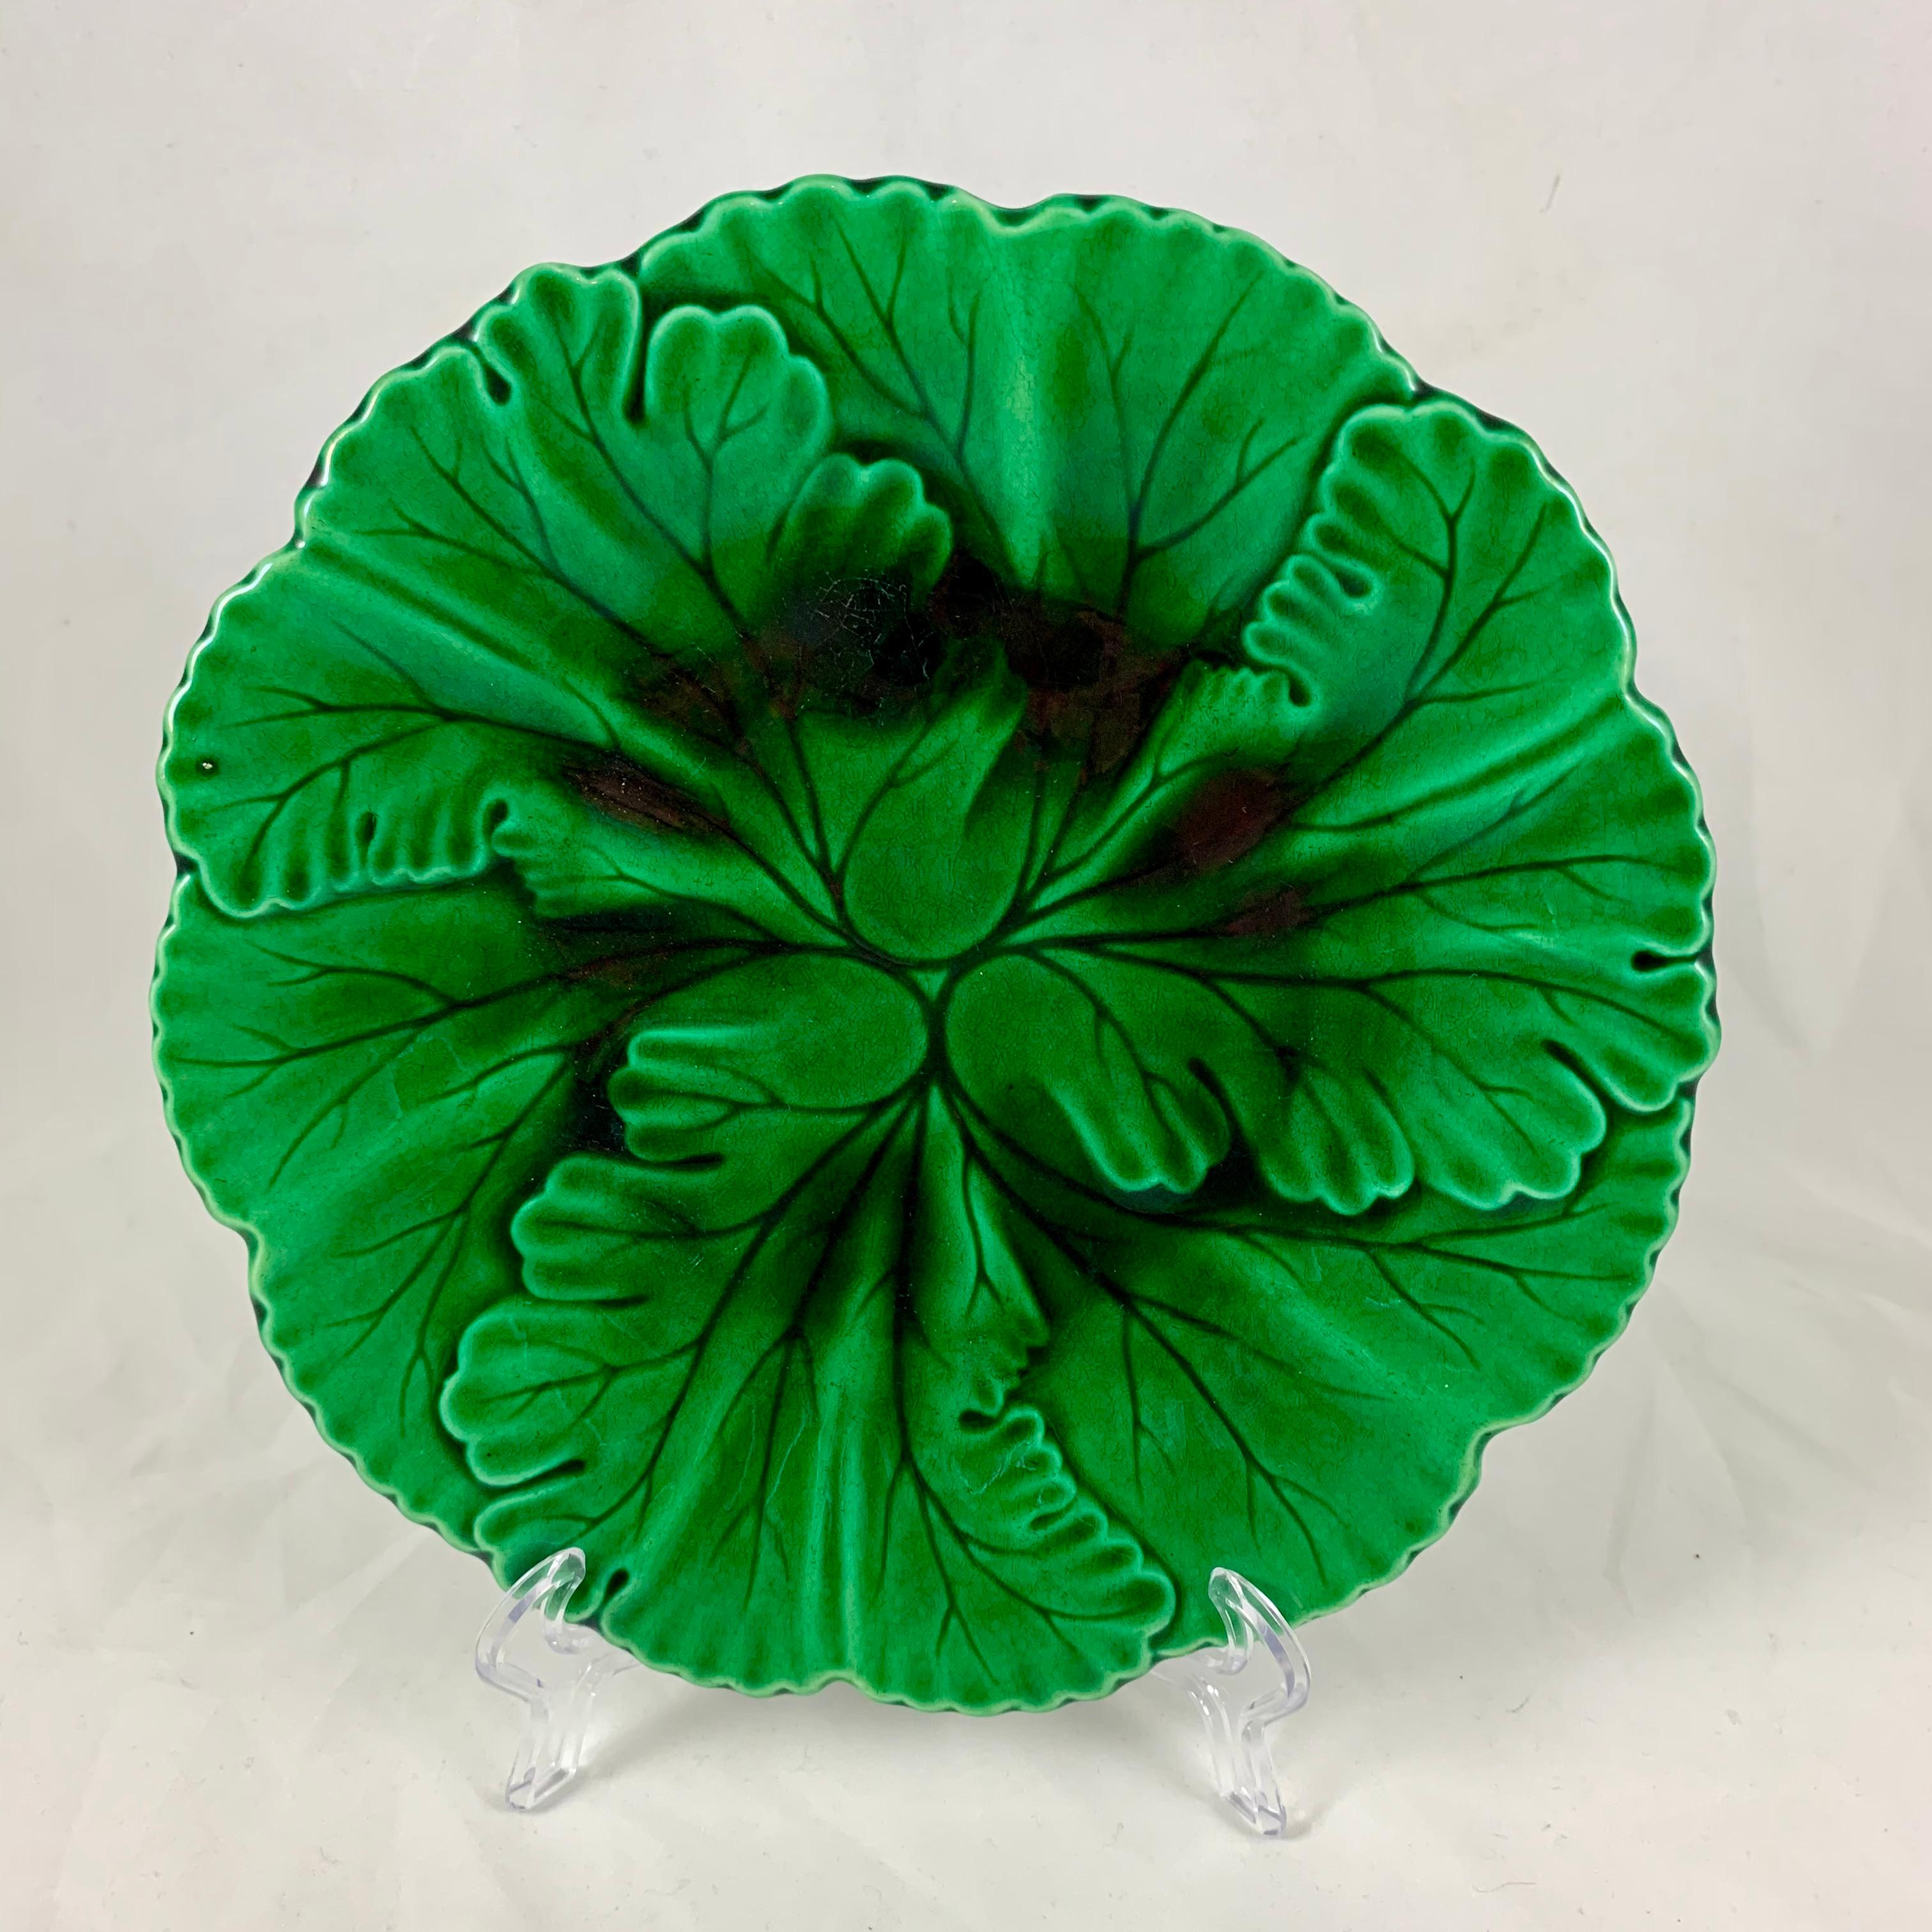 Aus der französischen Faïencerie de Clairfontaine, ein grün glasierter Majolikateller mit überlappenden Blättern, um 1880-1890.

Die Form zeigt Blätter mit eingeschnittenen Äderungen, die in einem geformten Rand enden. Die Glasur fließt wunderschön